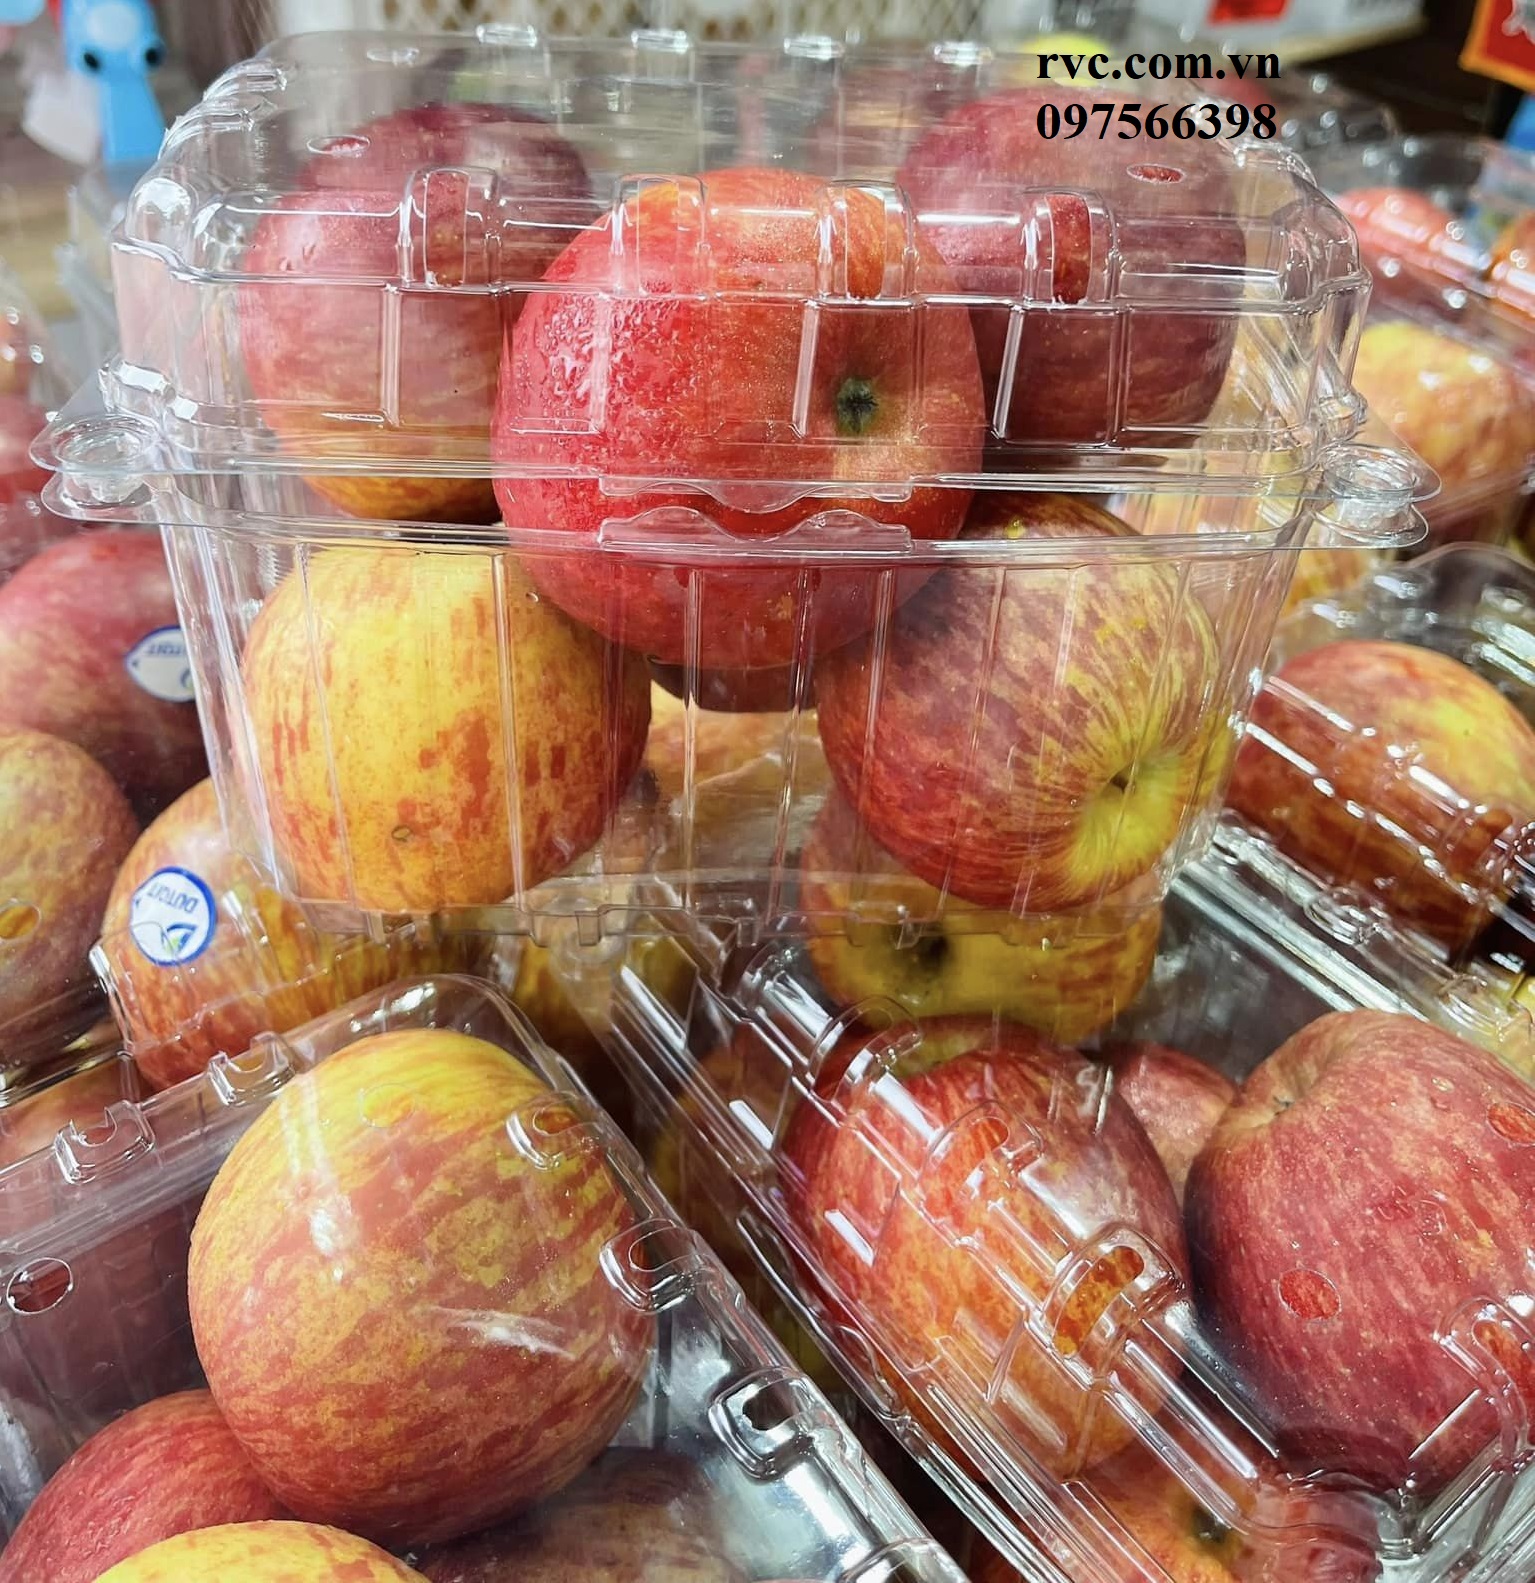 Hộp nhựa đựng trái cây 1kg P1000B phổ biến thị trường hiện nay